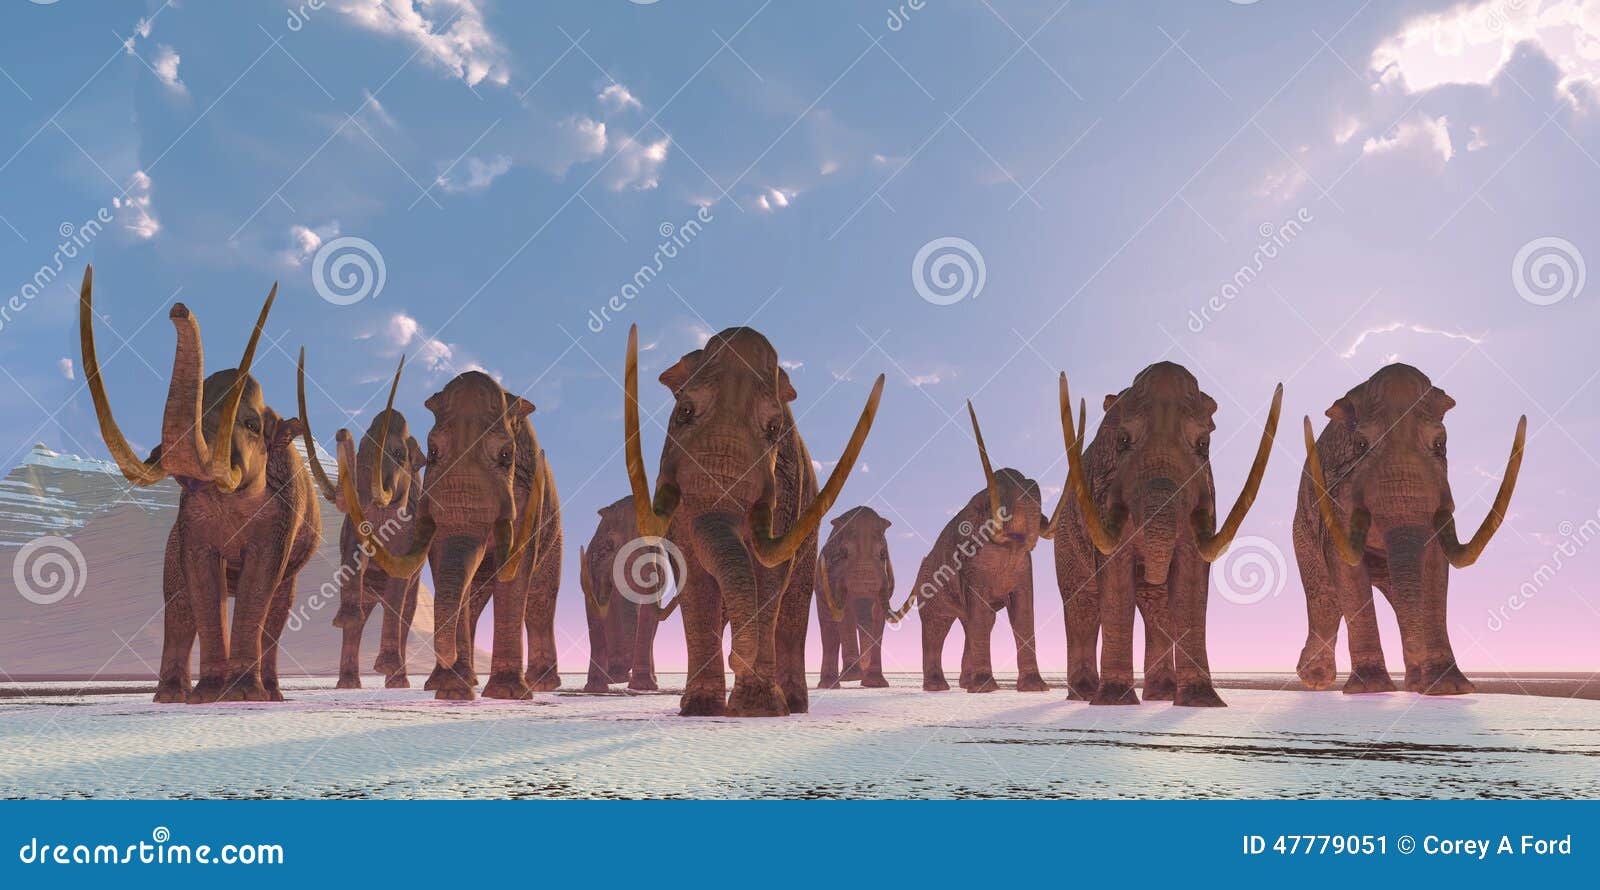 columbian mammoth herd